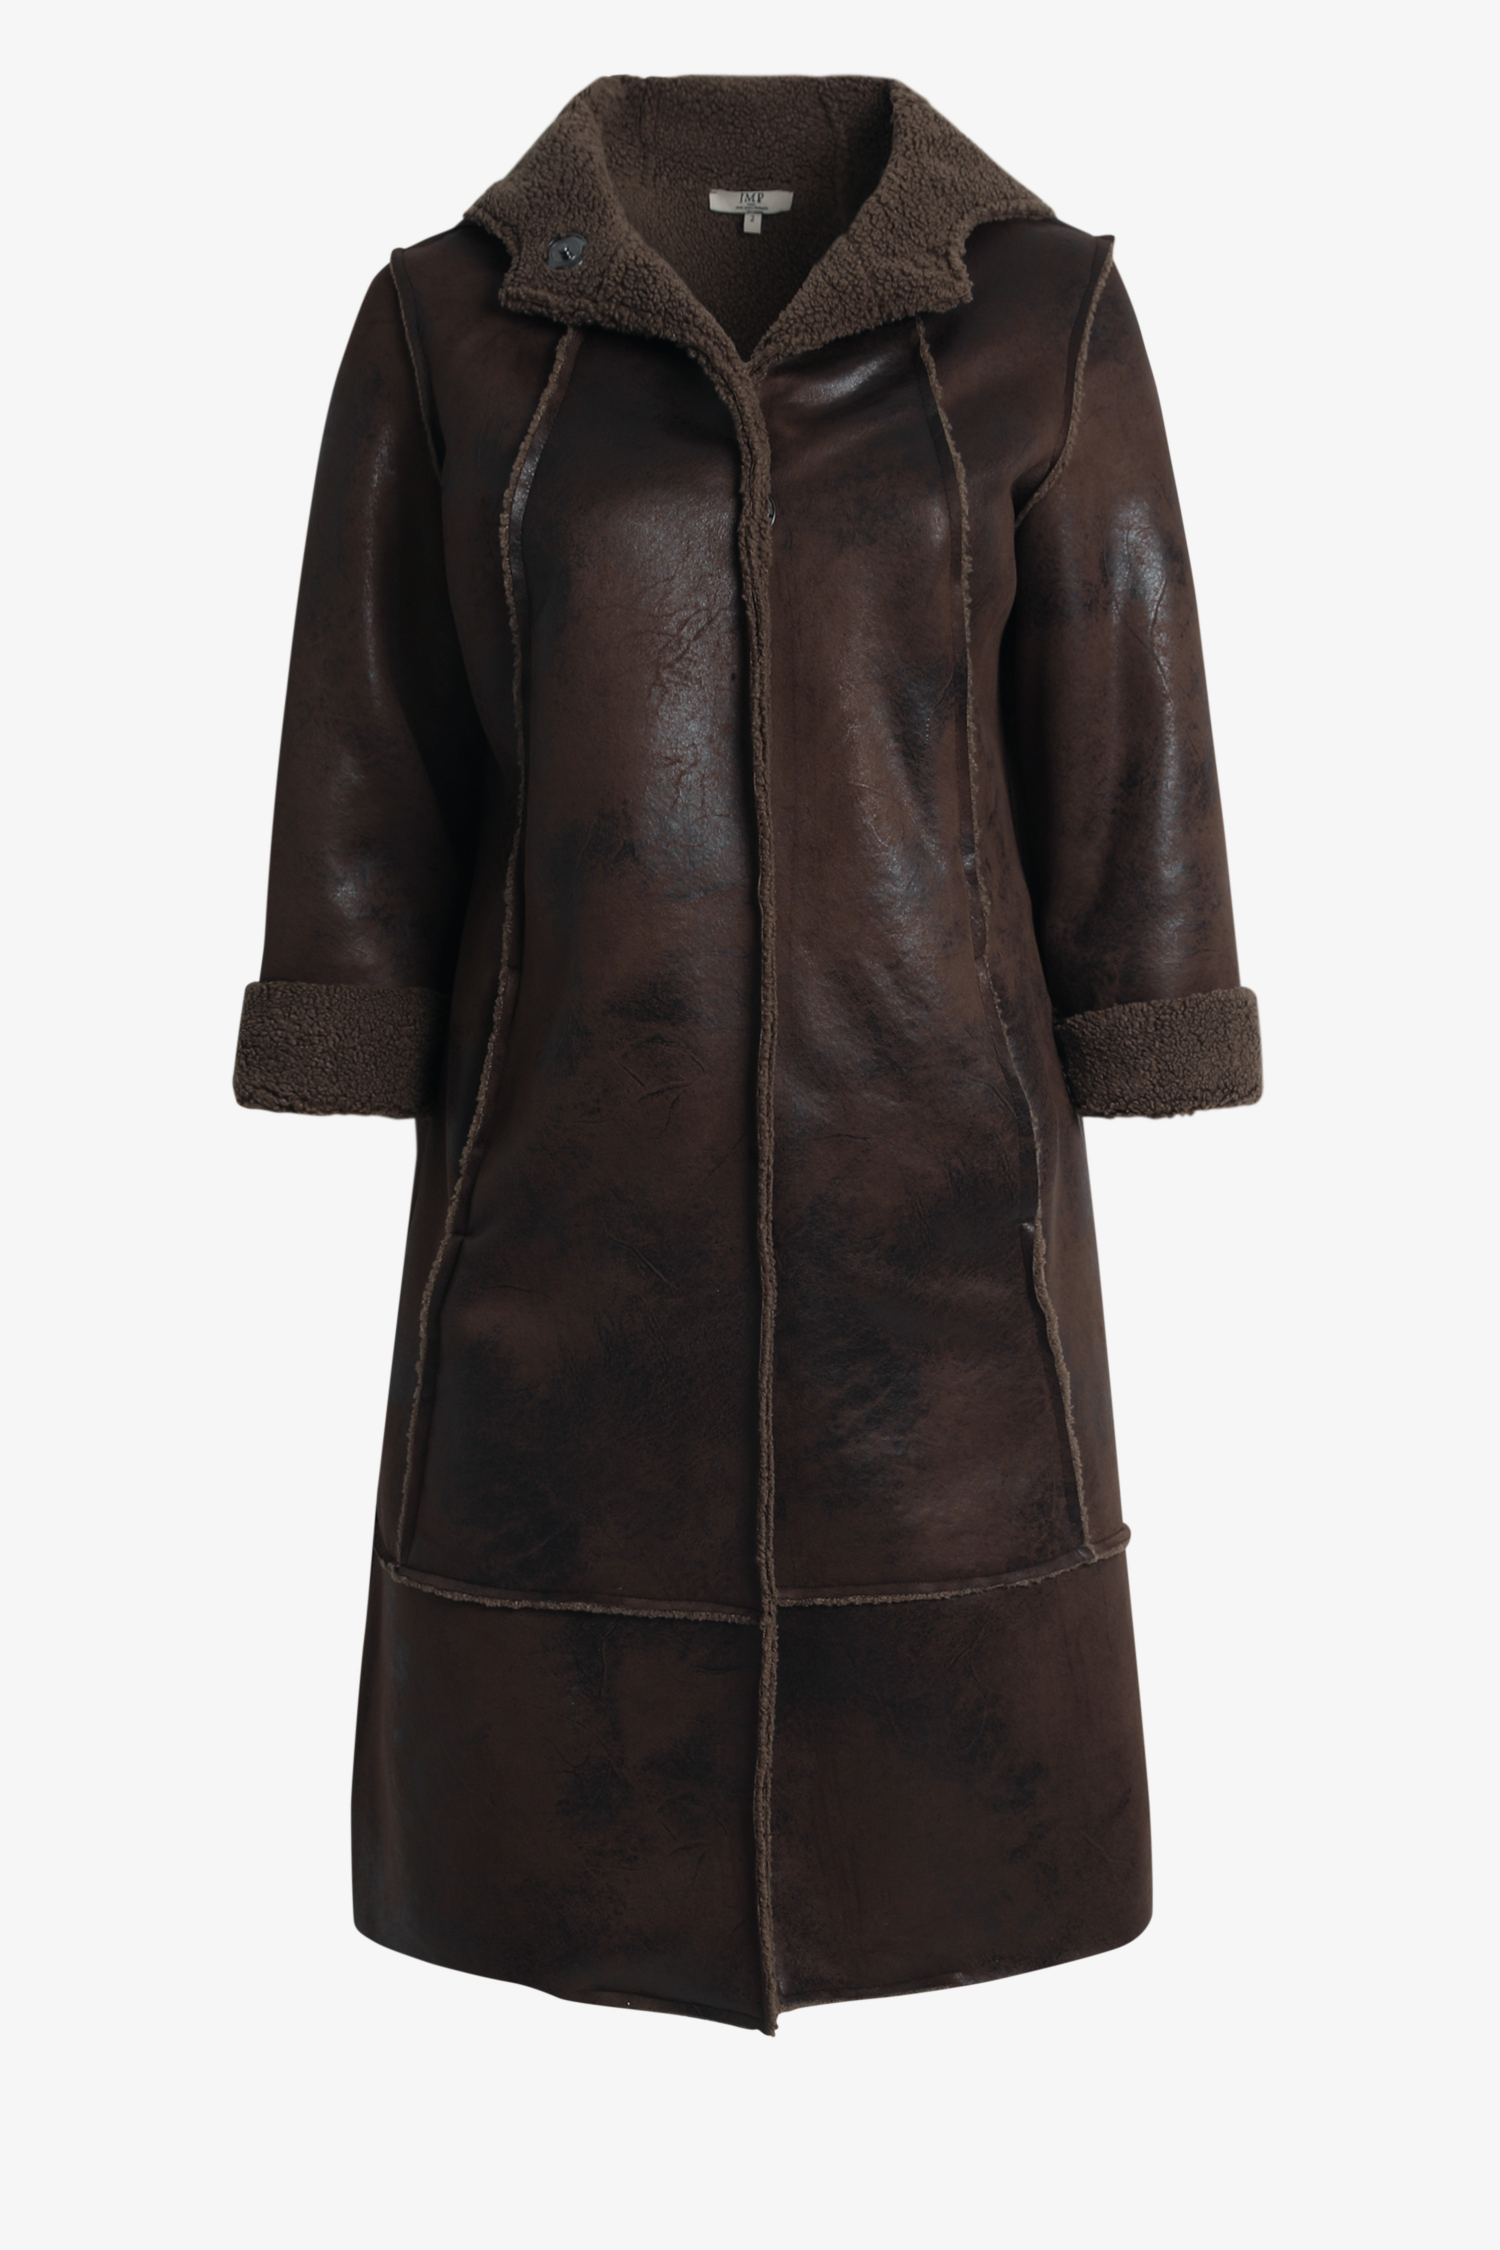 Vegan shearling hooded coat